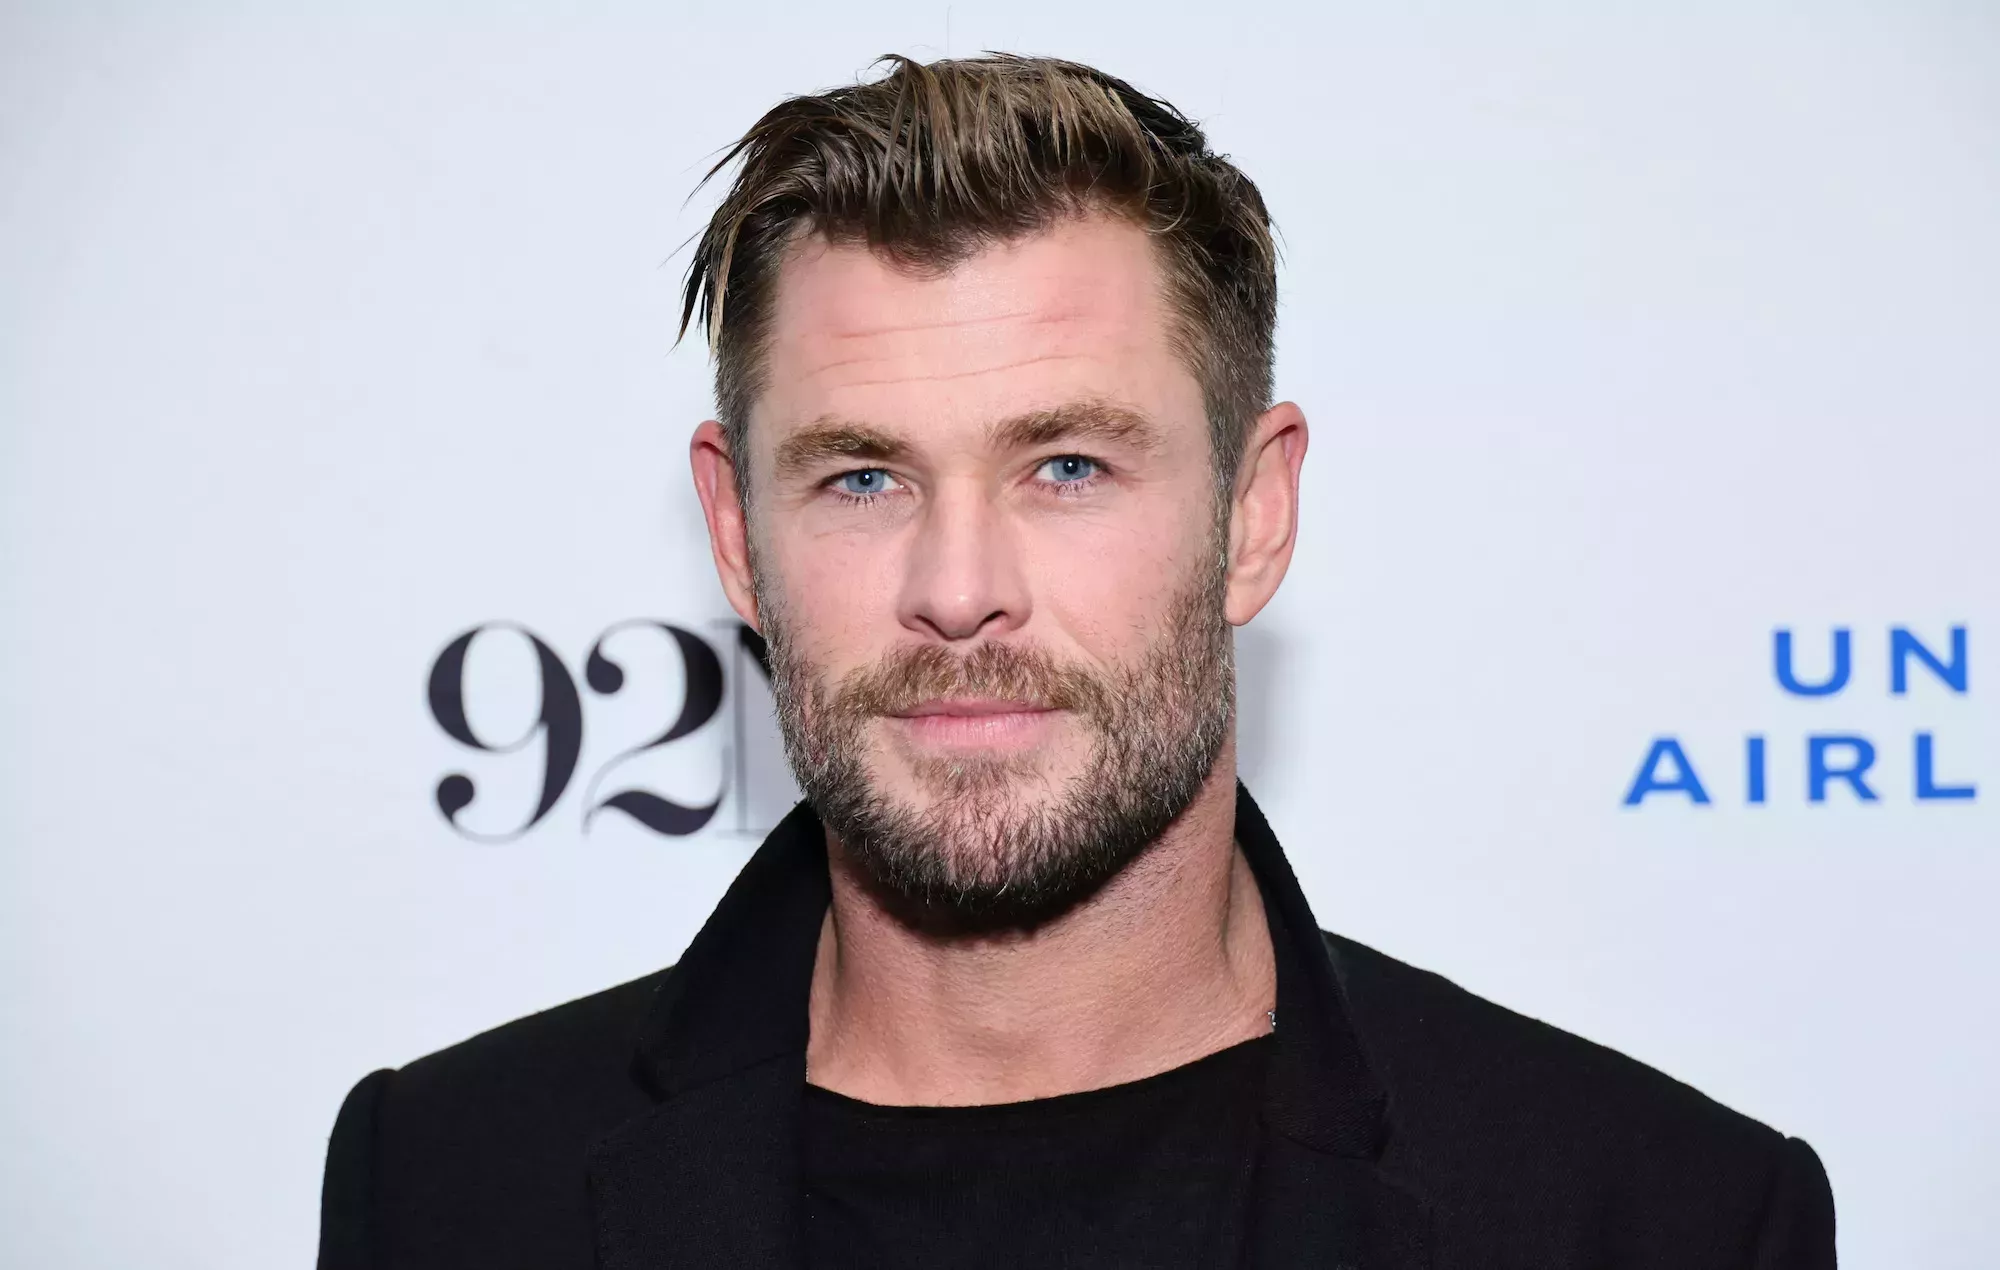 Chris Hemsworth se toma un descanso de la actuación tras revelar el riesgo de Alzheimer